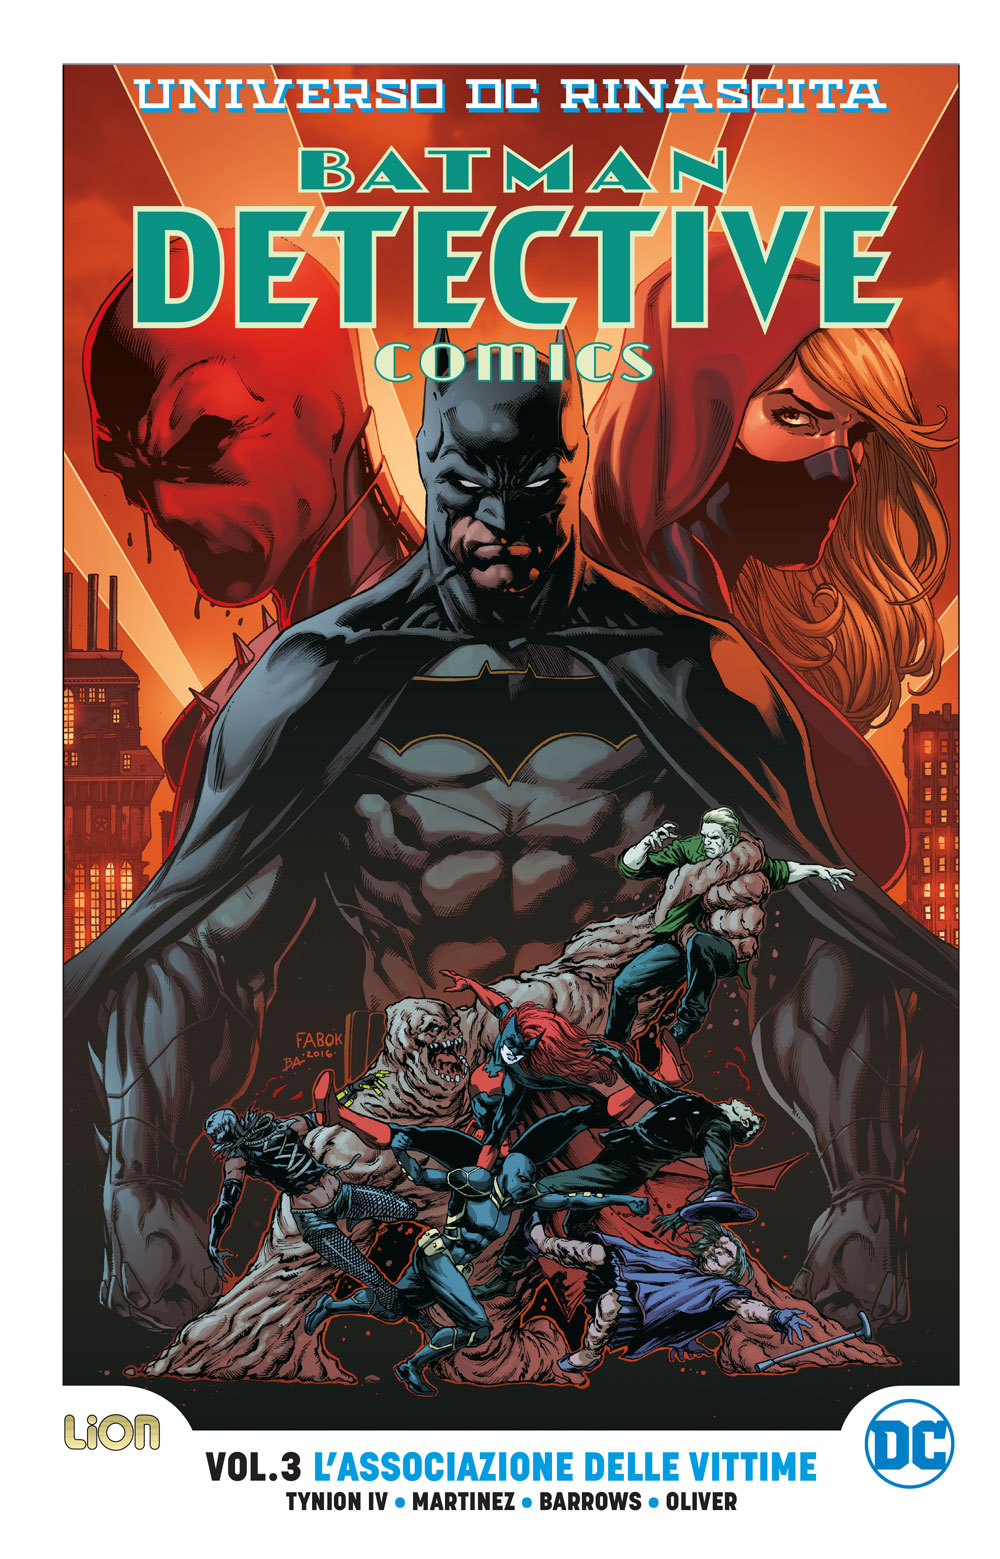 Libri Universo DC Rinascita: Batman Vol 03 - Detective Comics NUOVO SIGILLATO EDIZIONE DEL SUBITO DISPONIBILE